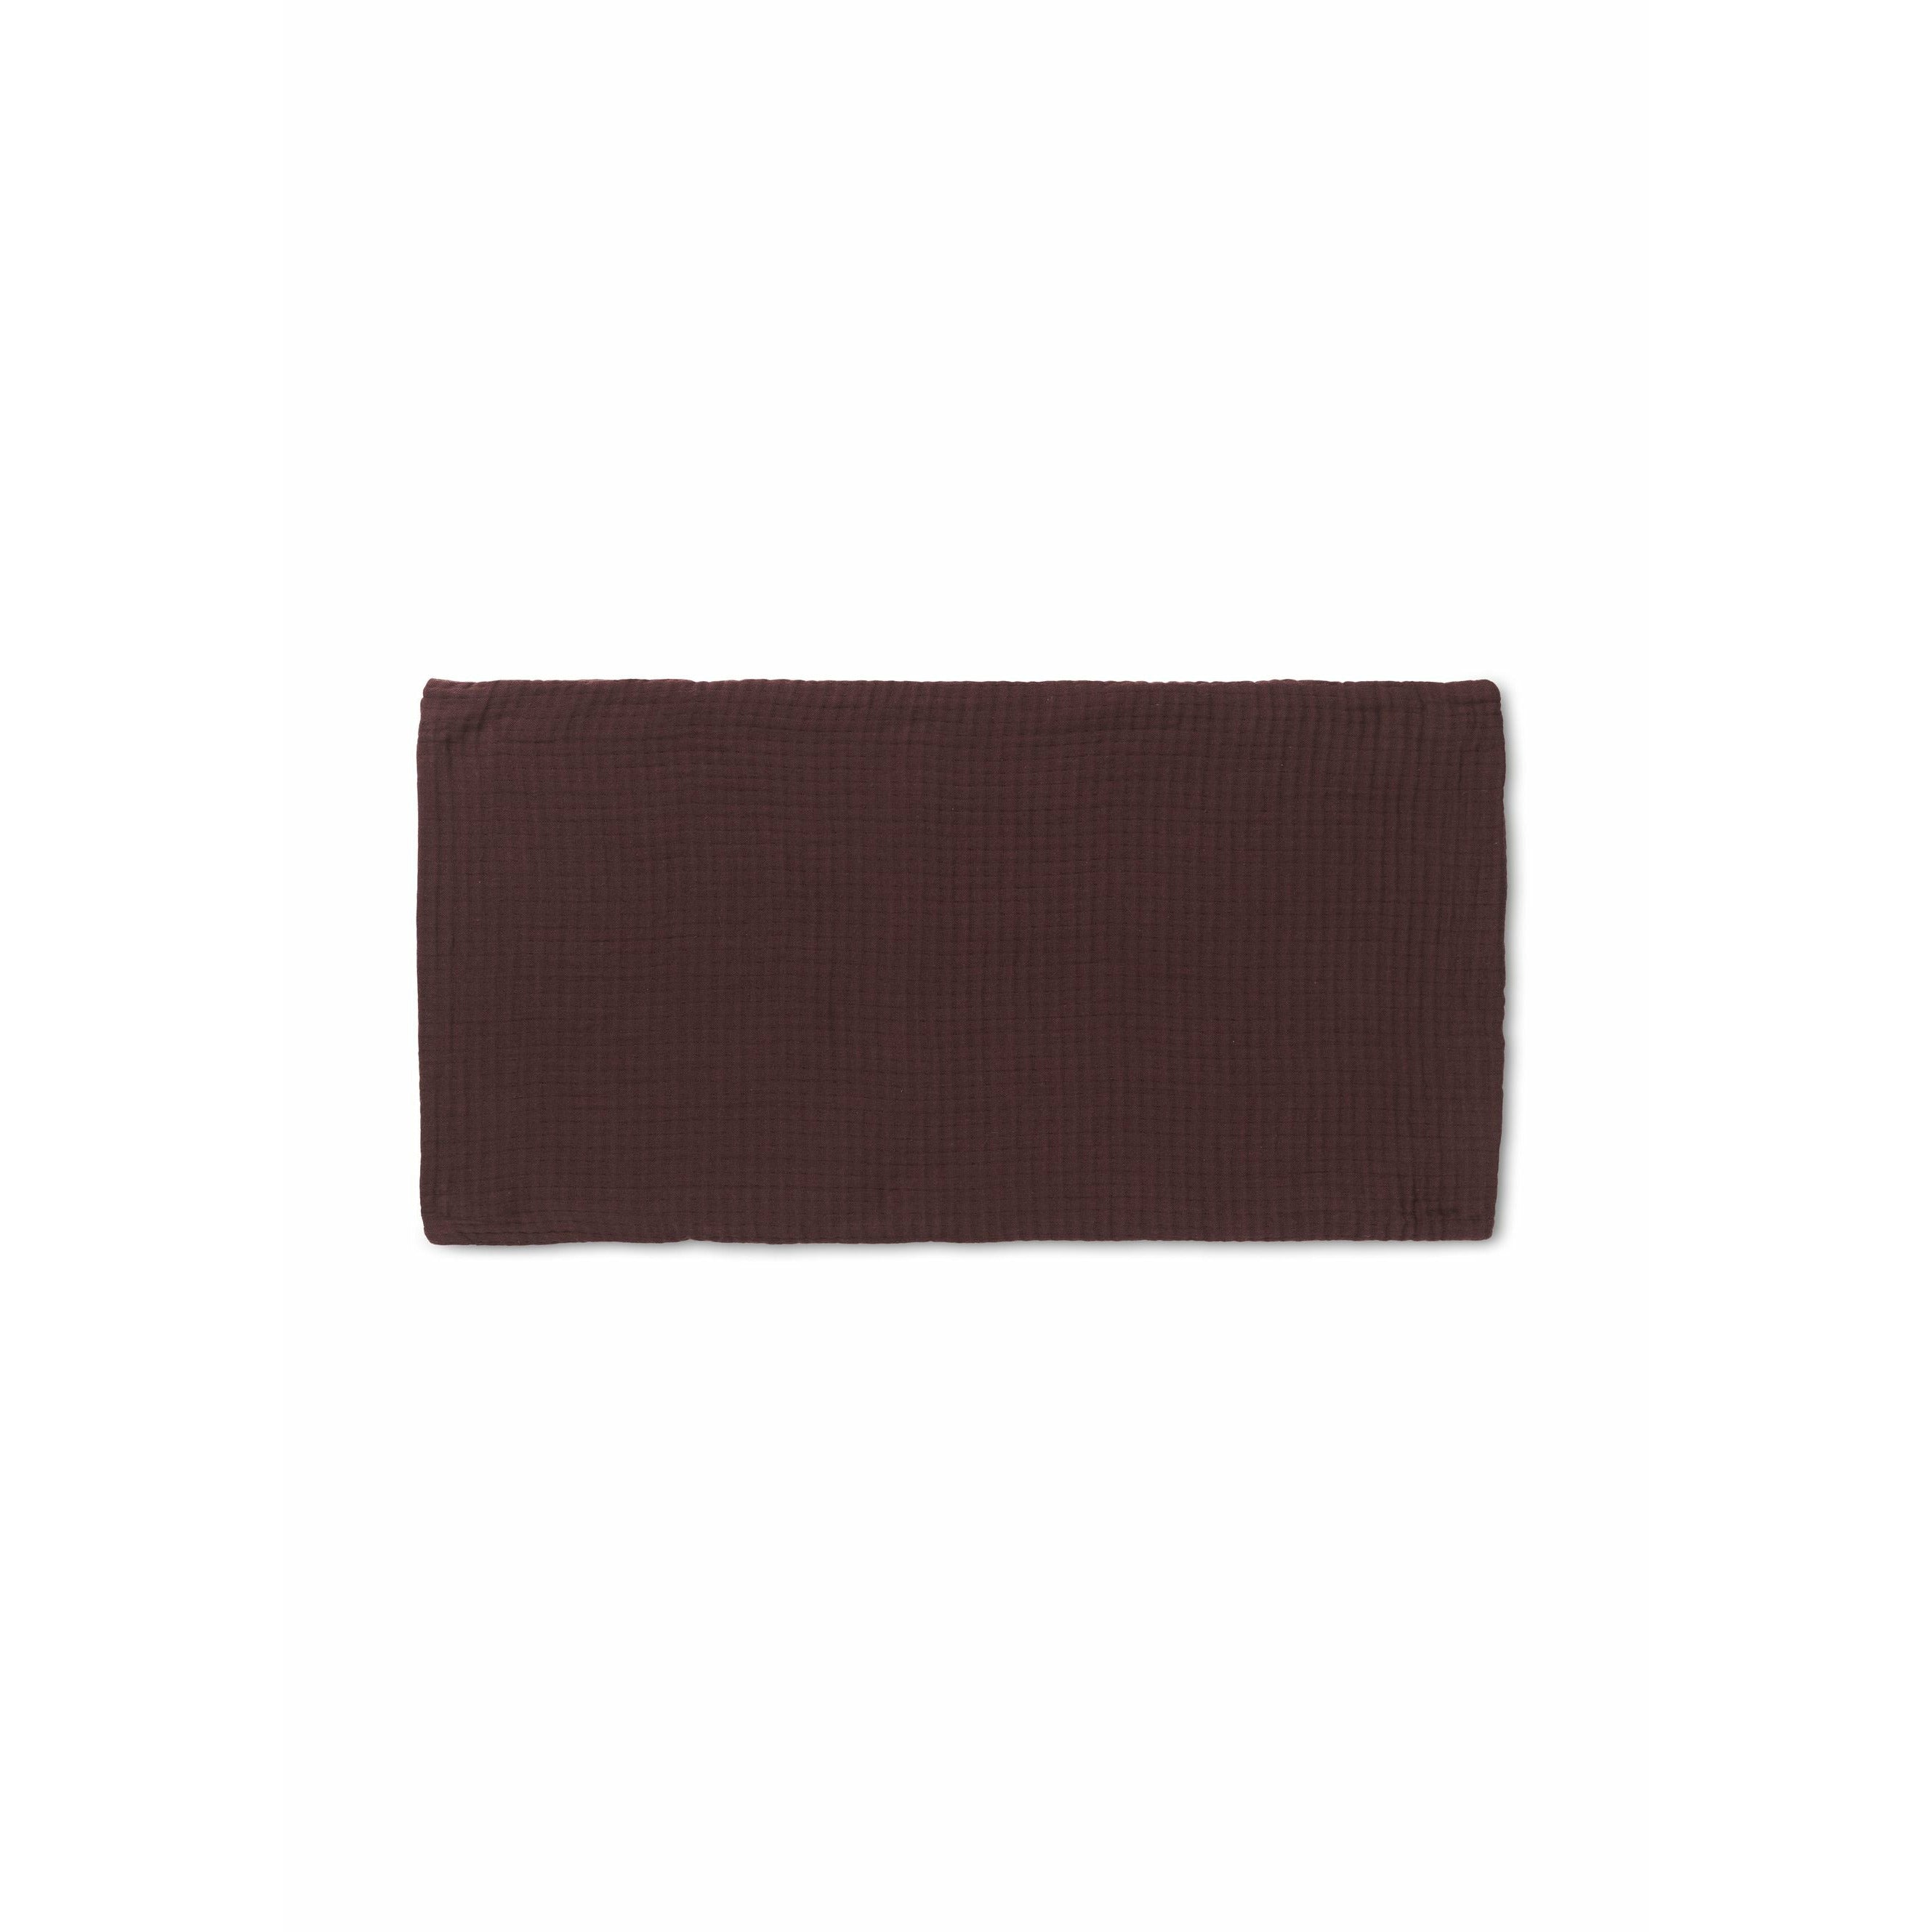 JUNA Bekijk kussen 30x60 cm, chocolade